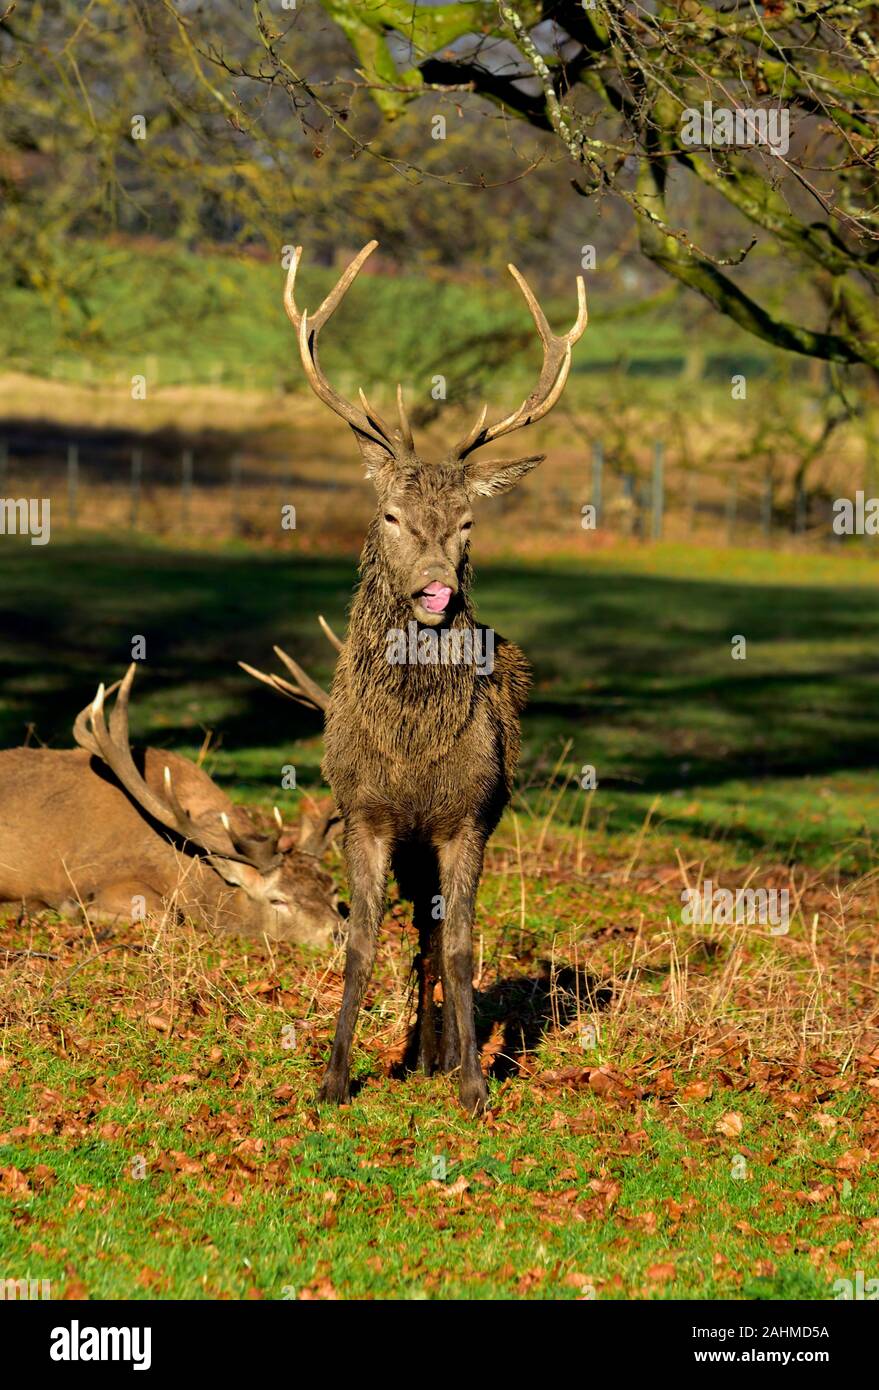 Red Deer stag Cervus elaphus appeler pendant la saison du rut,Parc,Nottingham Wollaton,Angleterre,UK Banque D'Images